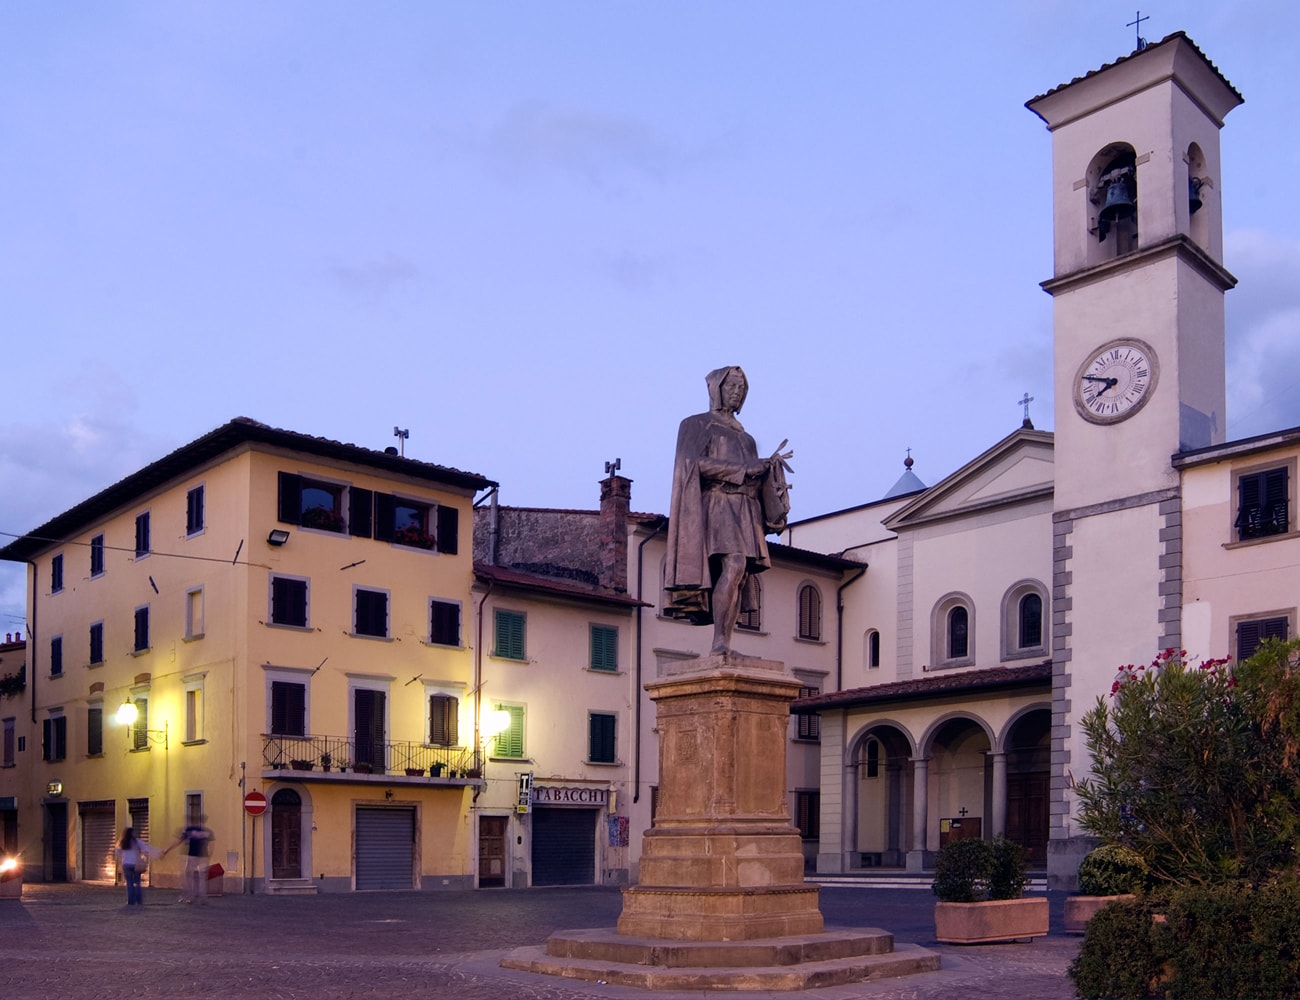 Piazza Giotto